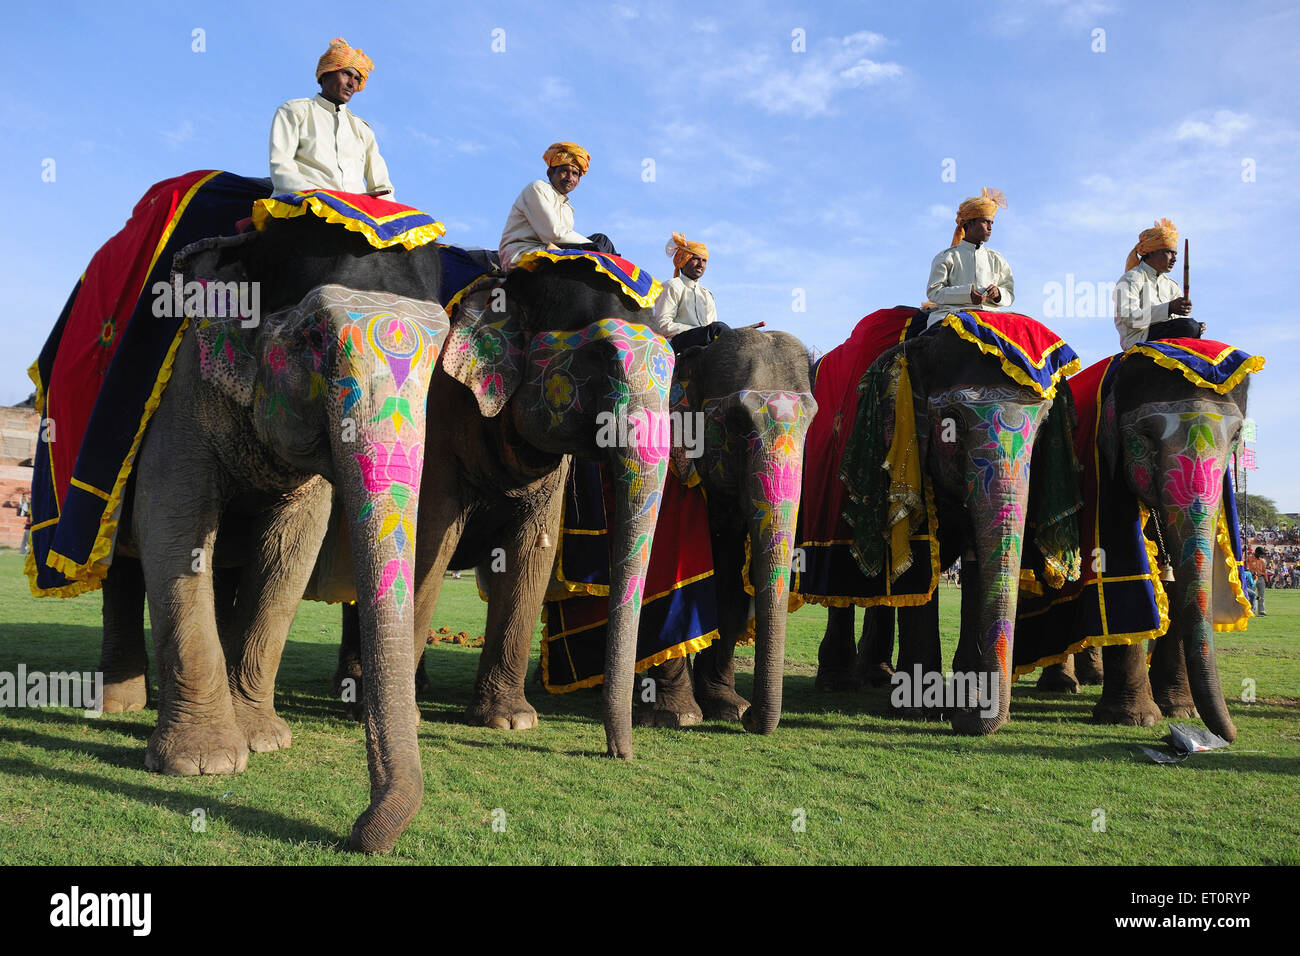 painted elephant, elephant decorated, elephant decoration, elephant parade, elephant festival. Jaipur, Rajasthan, India, Indian festivals Stock Photo